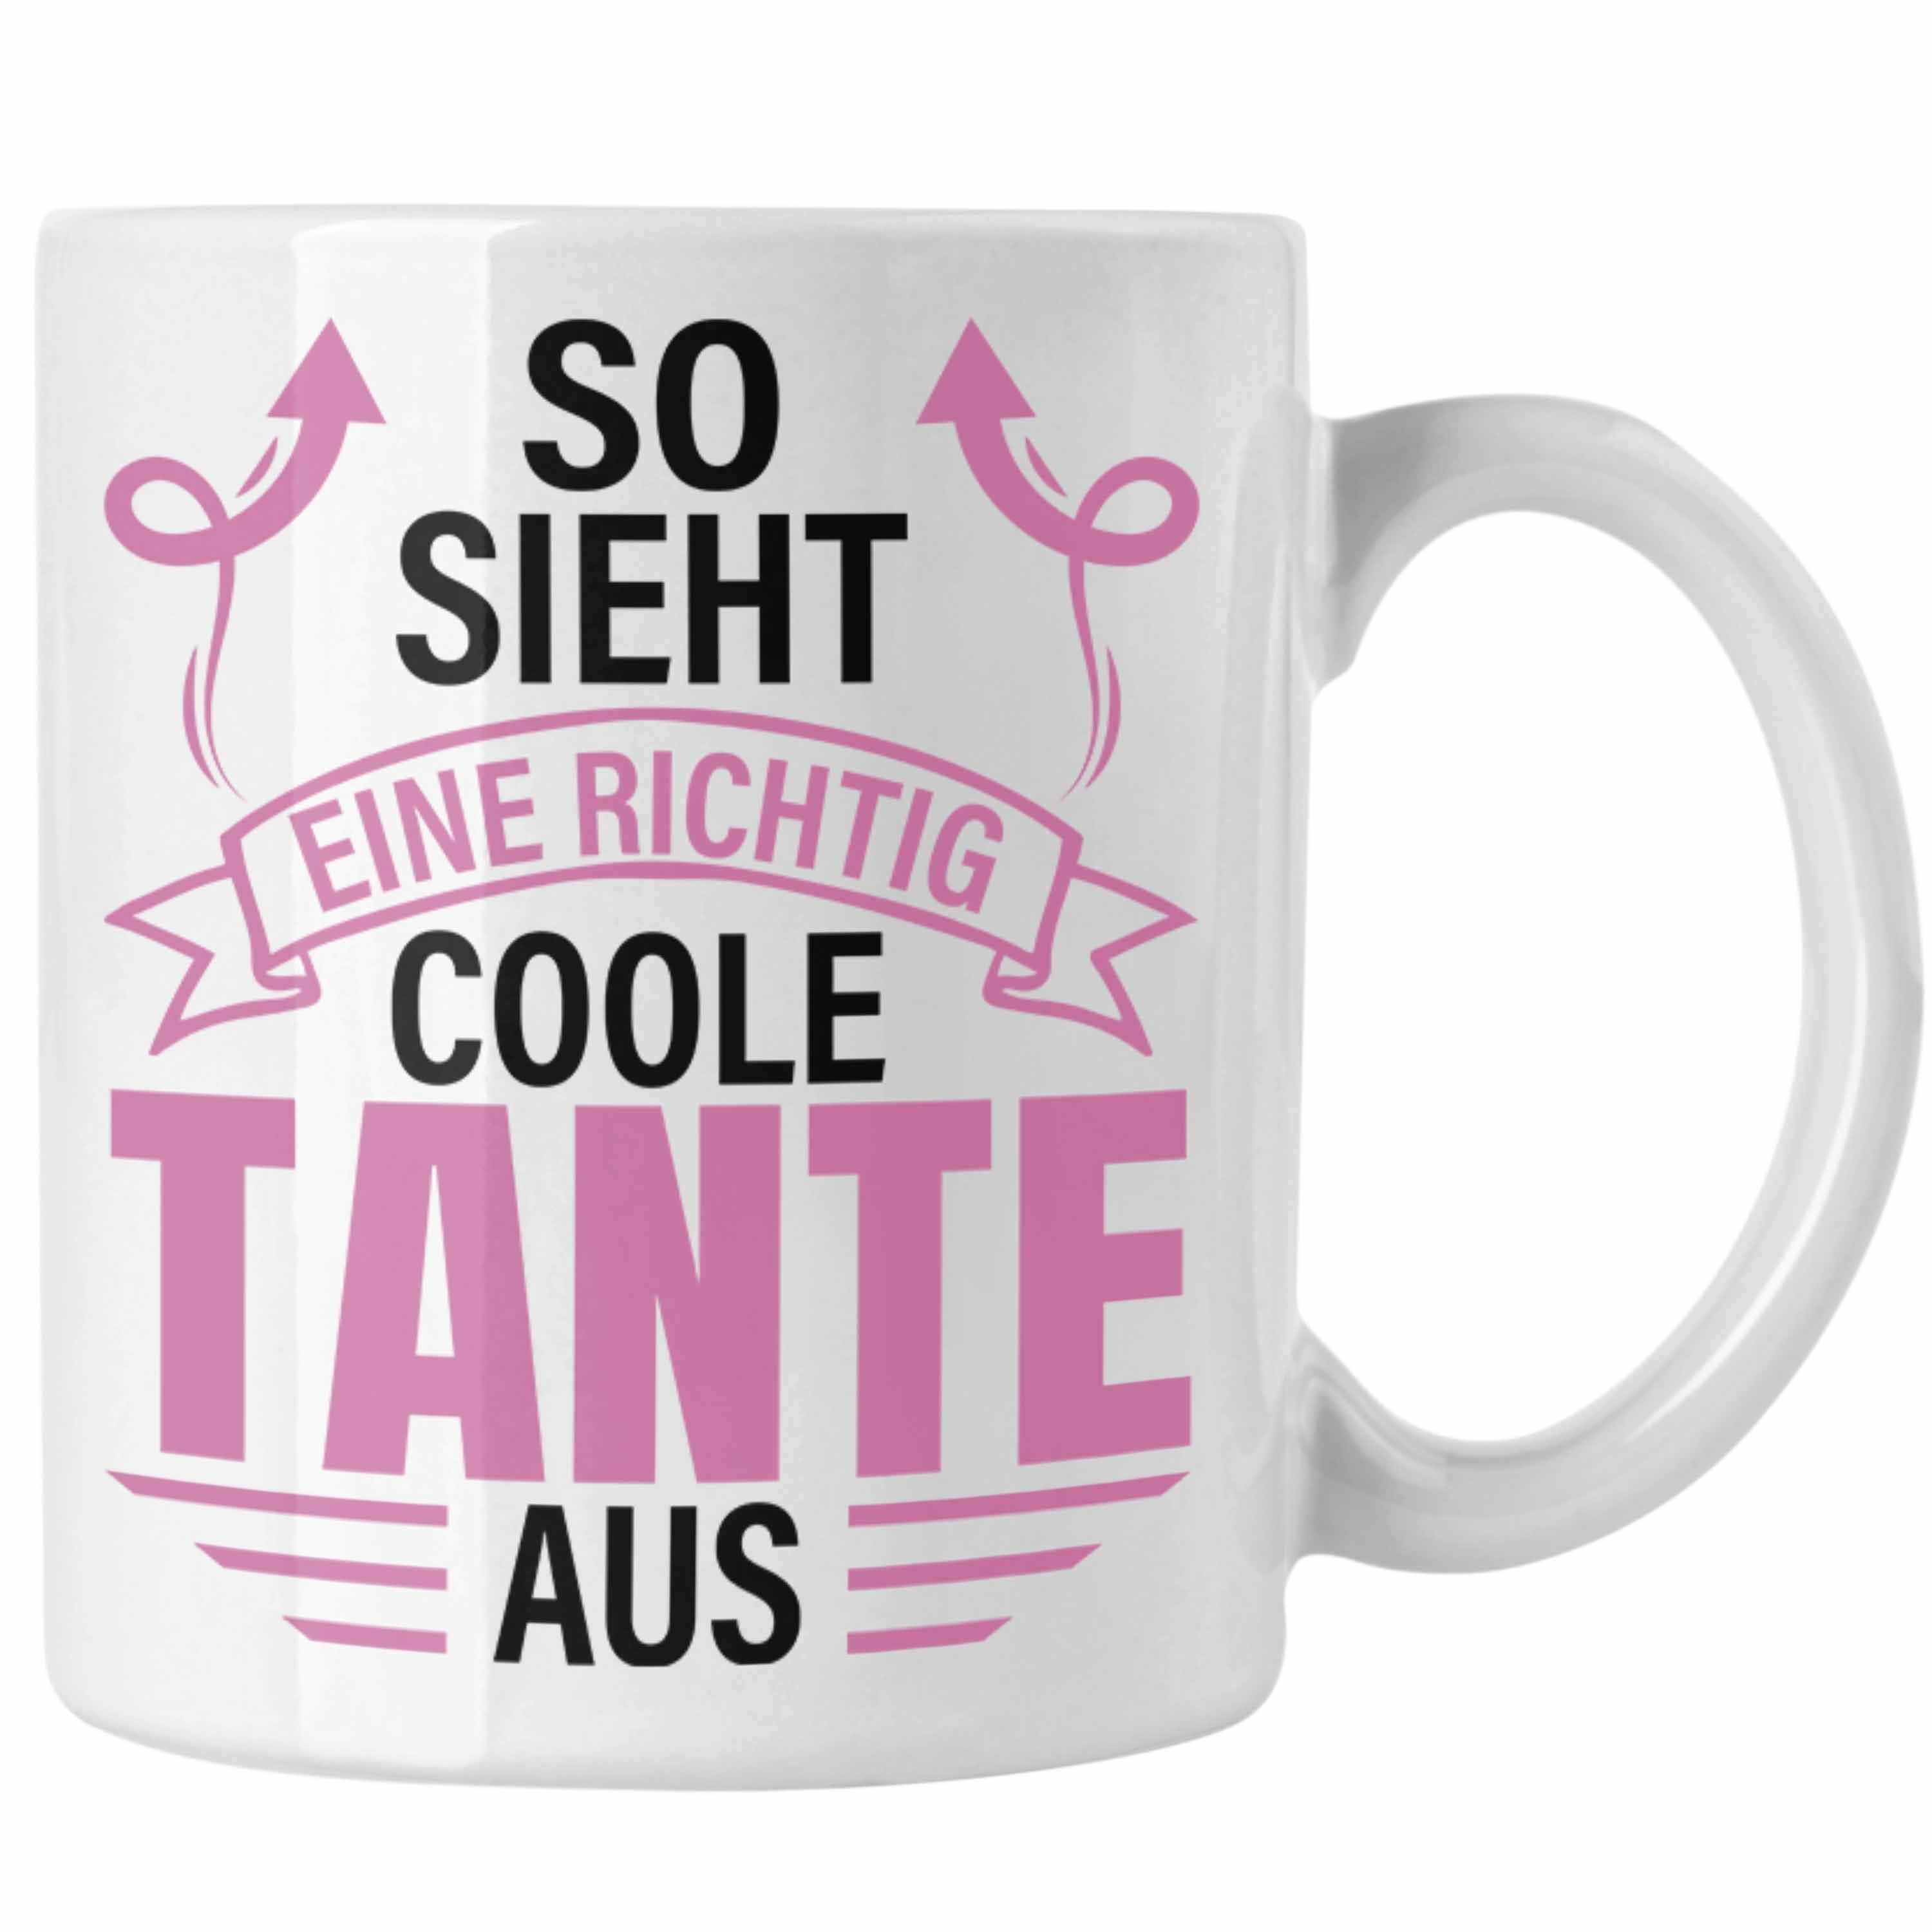 Trendation Tasse Trendation - Tante Weiss Tante Lustig Coole Sieht Richtig Eine Tasse Geschenkidee Geschenk Aus So Spruch